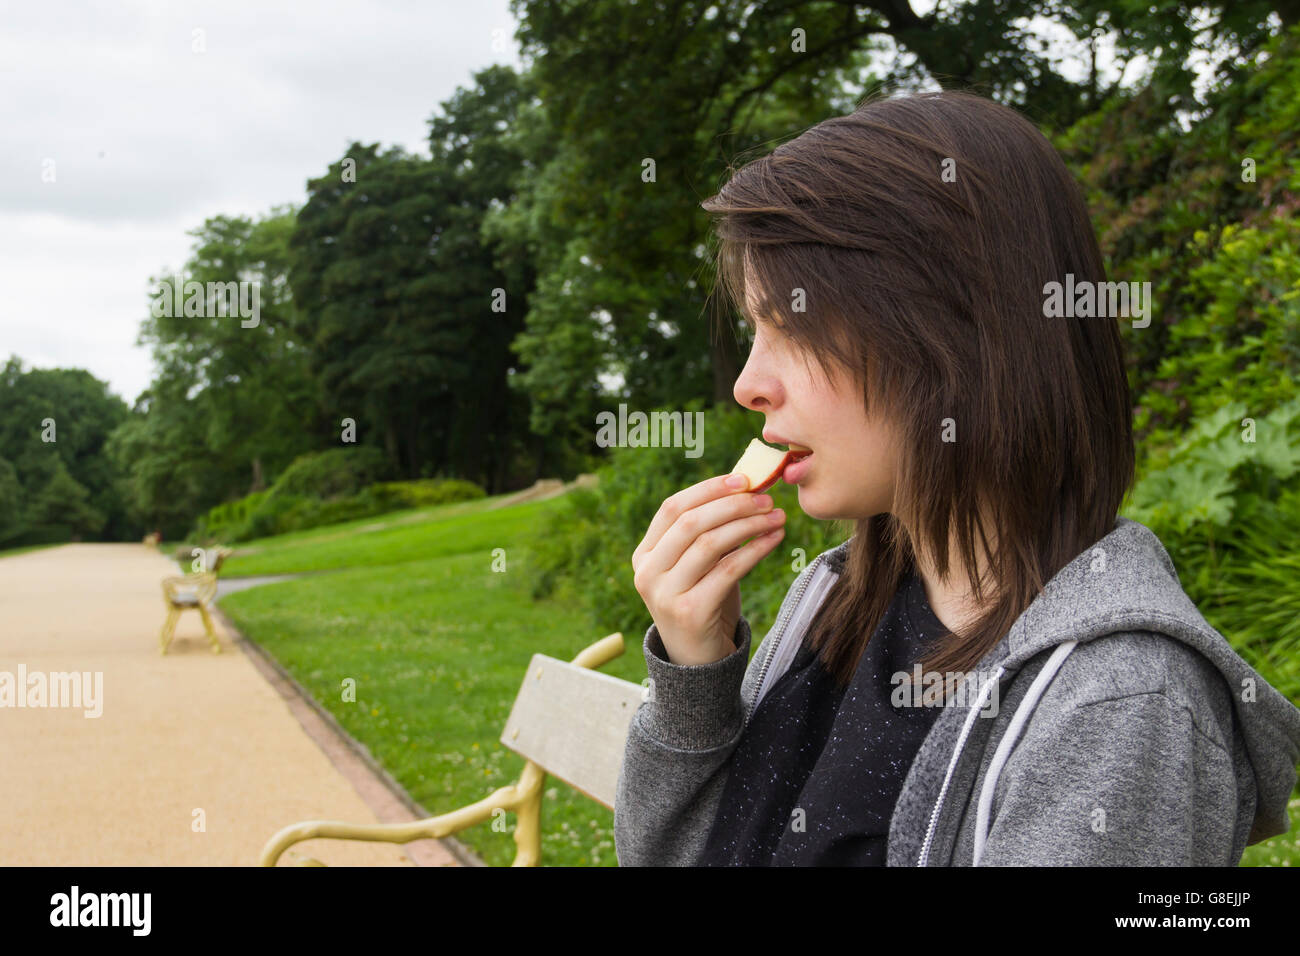 Mujer joven, adulto o el final de su adolescencia, sentado en el parque comiendo un trozo de manzana. Foto de stock